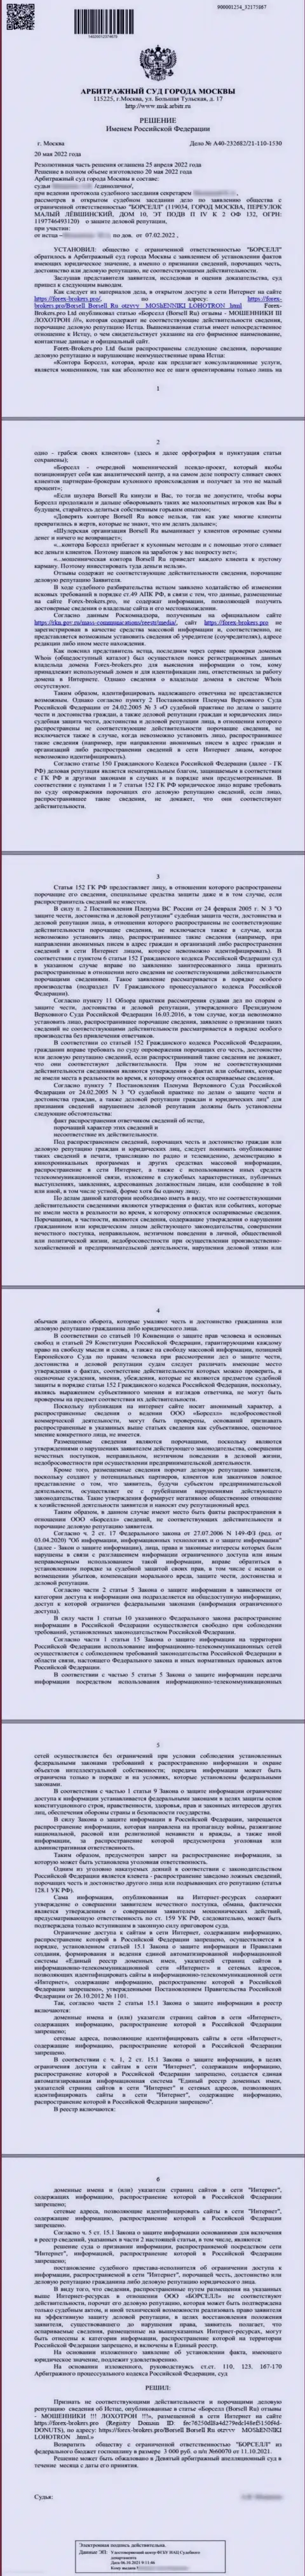 Скрин решения арбитражного суда по заявлению аналитической компании ООО БОРСЕЛЛ